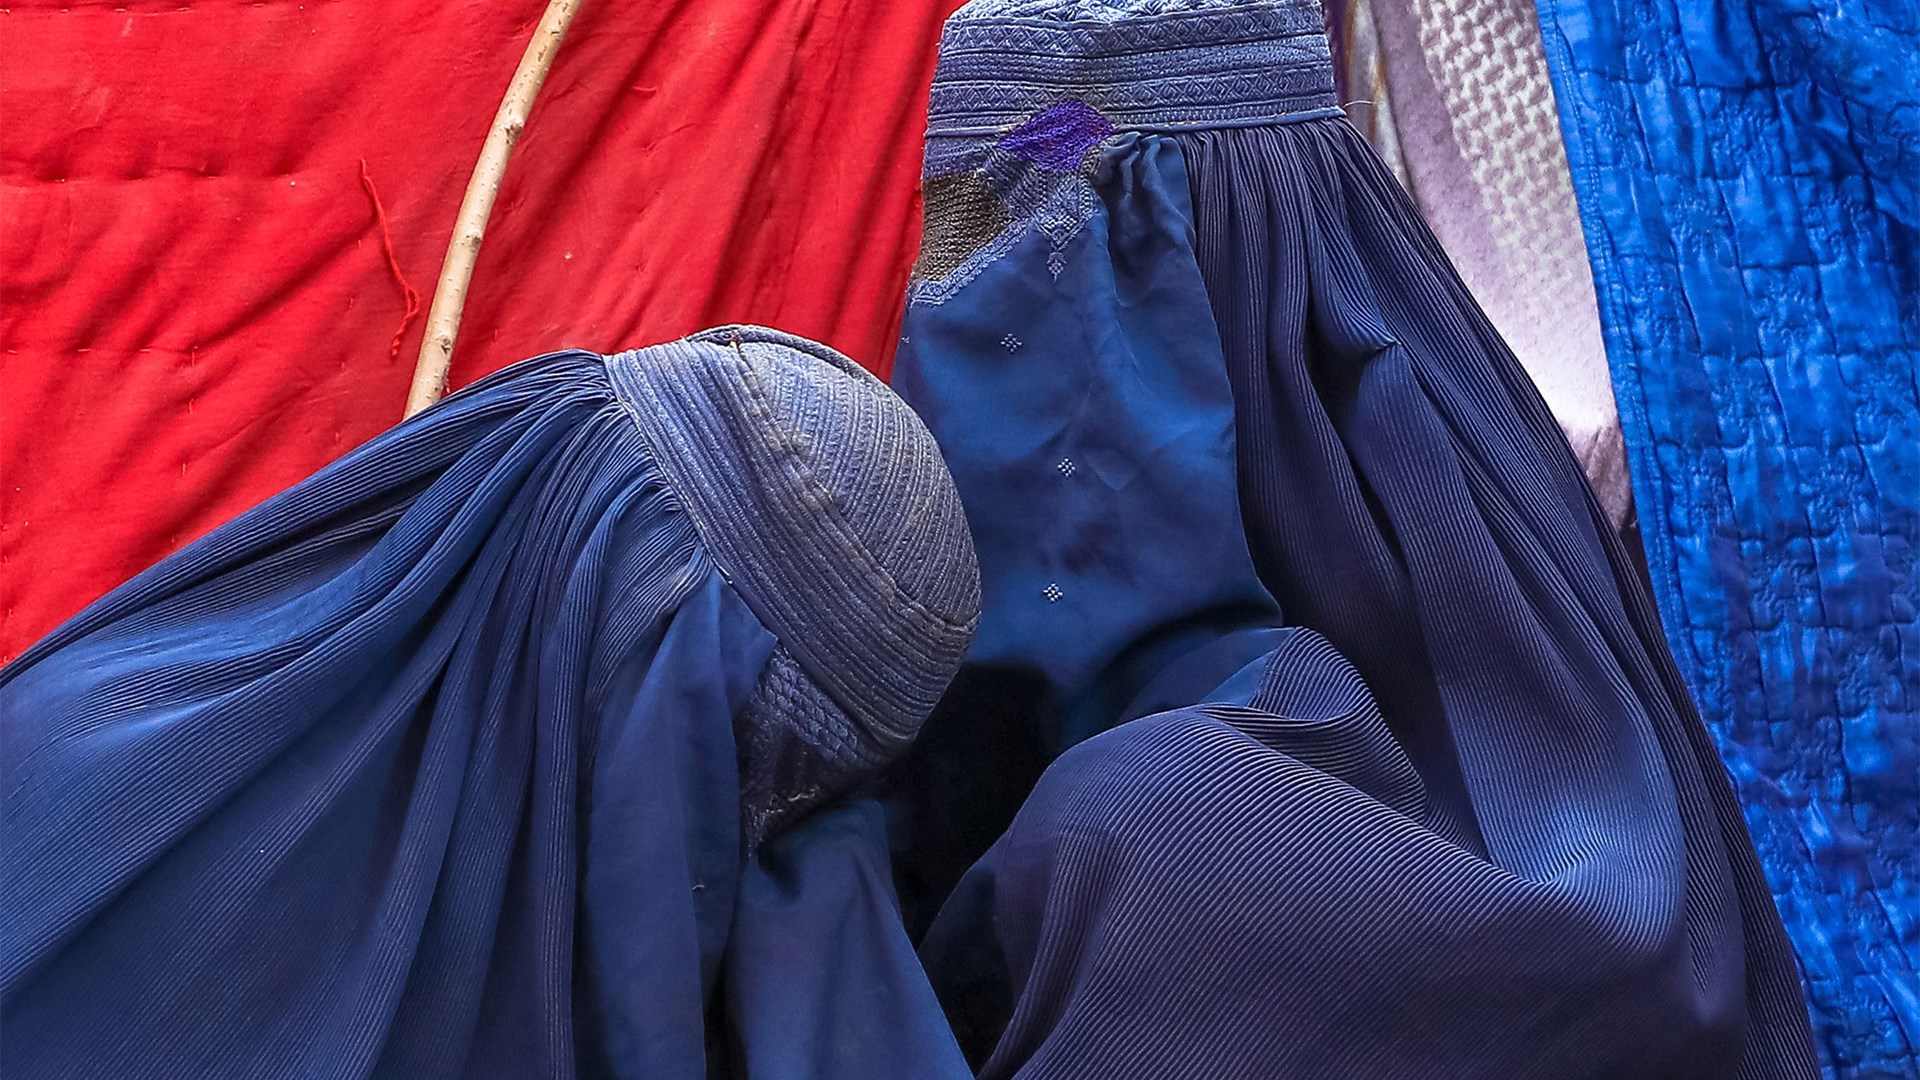 Φρίκη στο Αφγανιστάν – Οι Ταλιμπάν σκότωσαν γυναίκα επειδή δεν φορούσε μπούρκα -Προσοχή σκληρές εικόνες